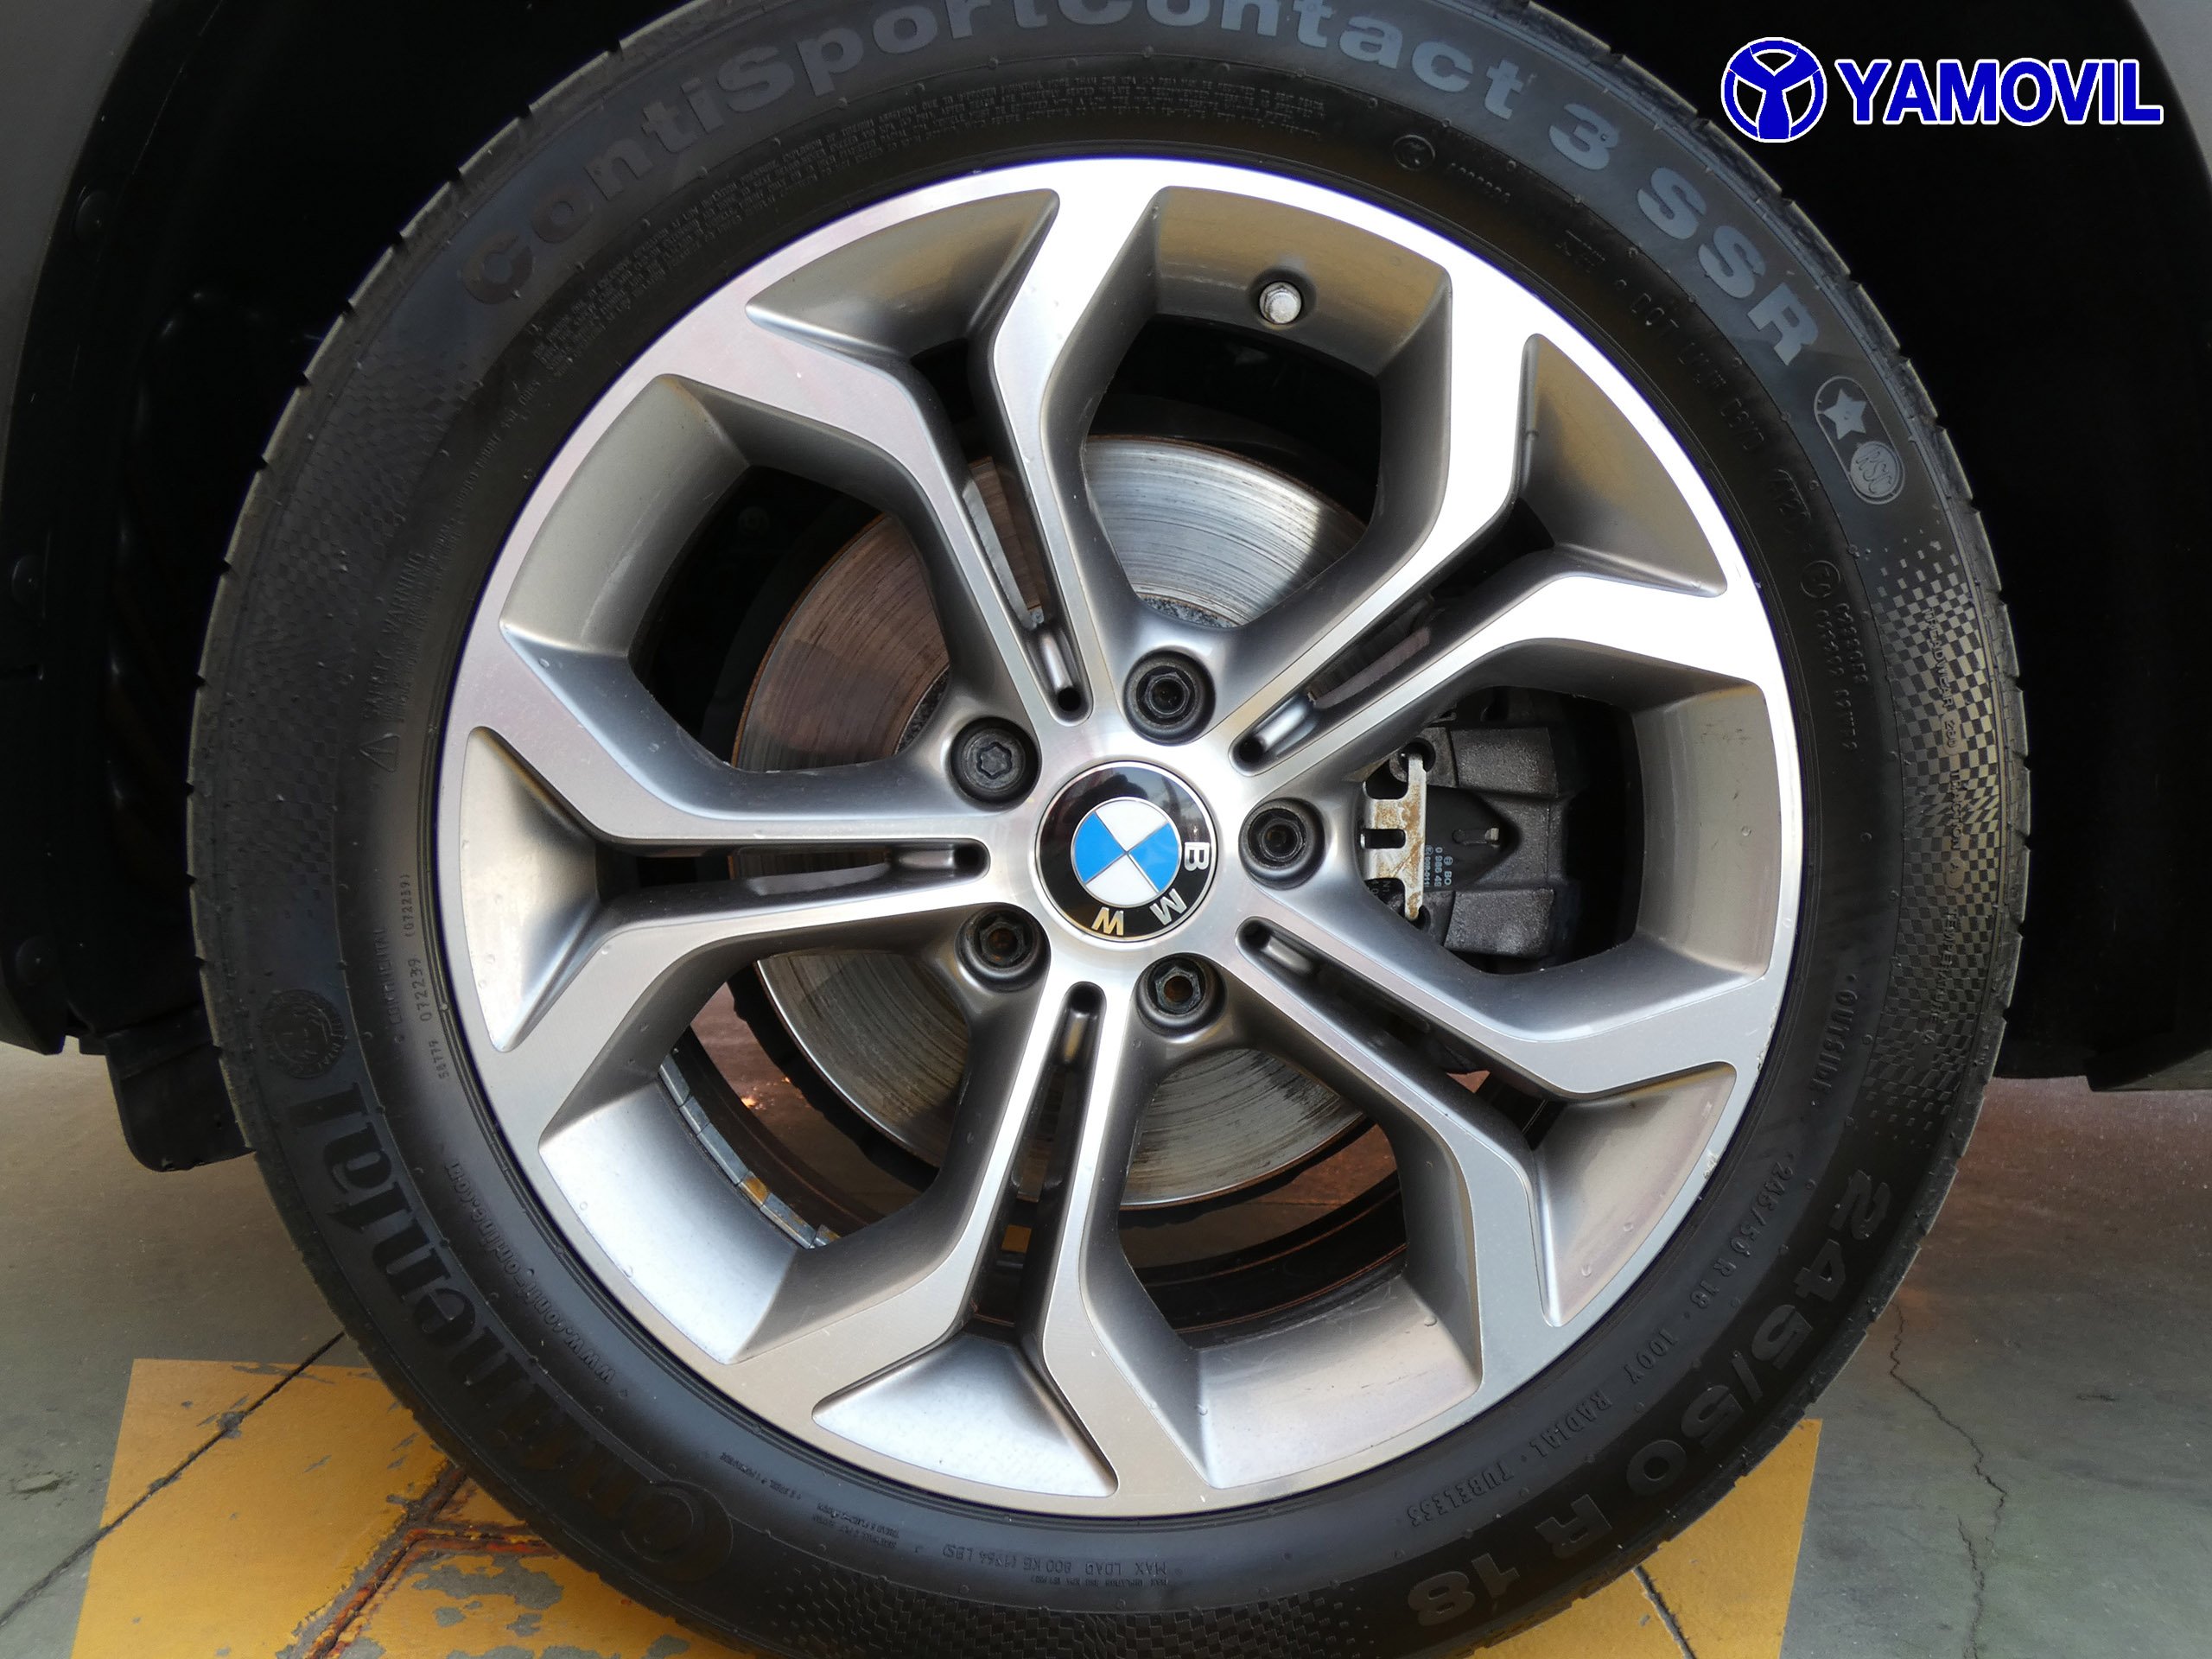 BMW X3 2.0 XDRIVE 5P - Foto 9